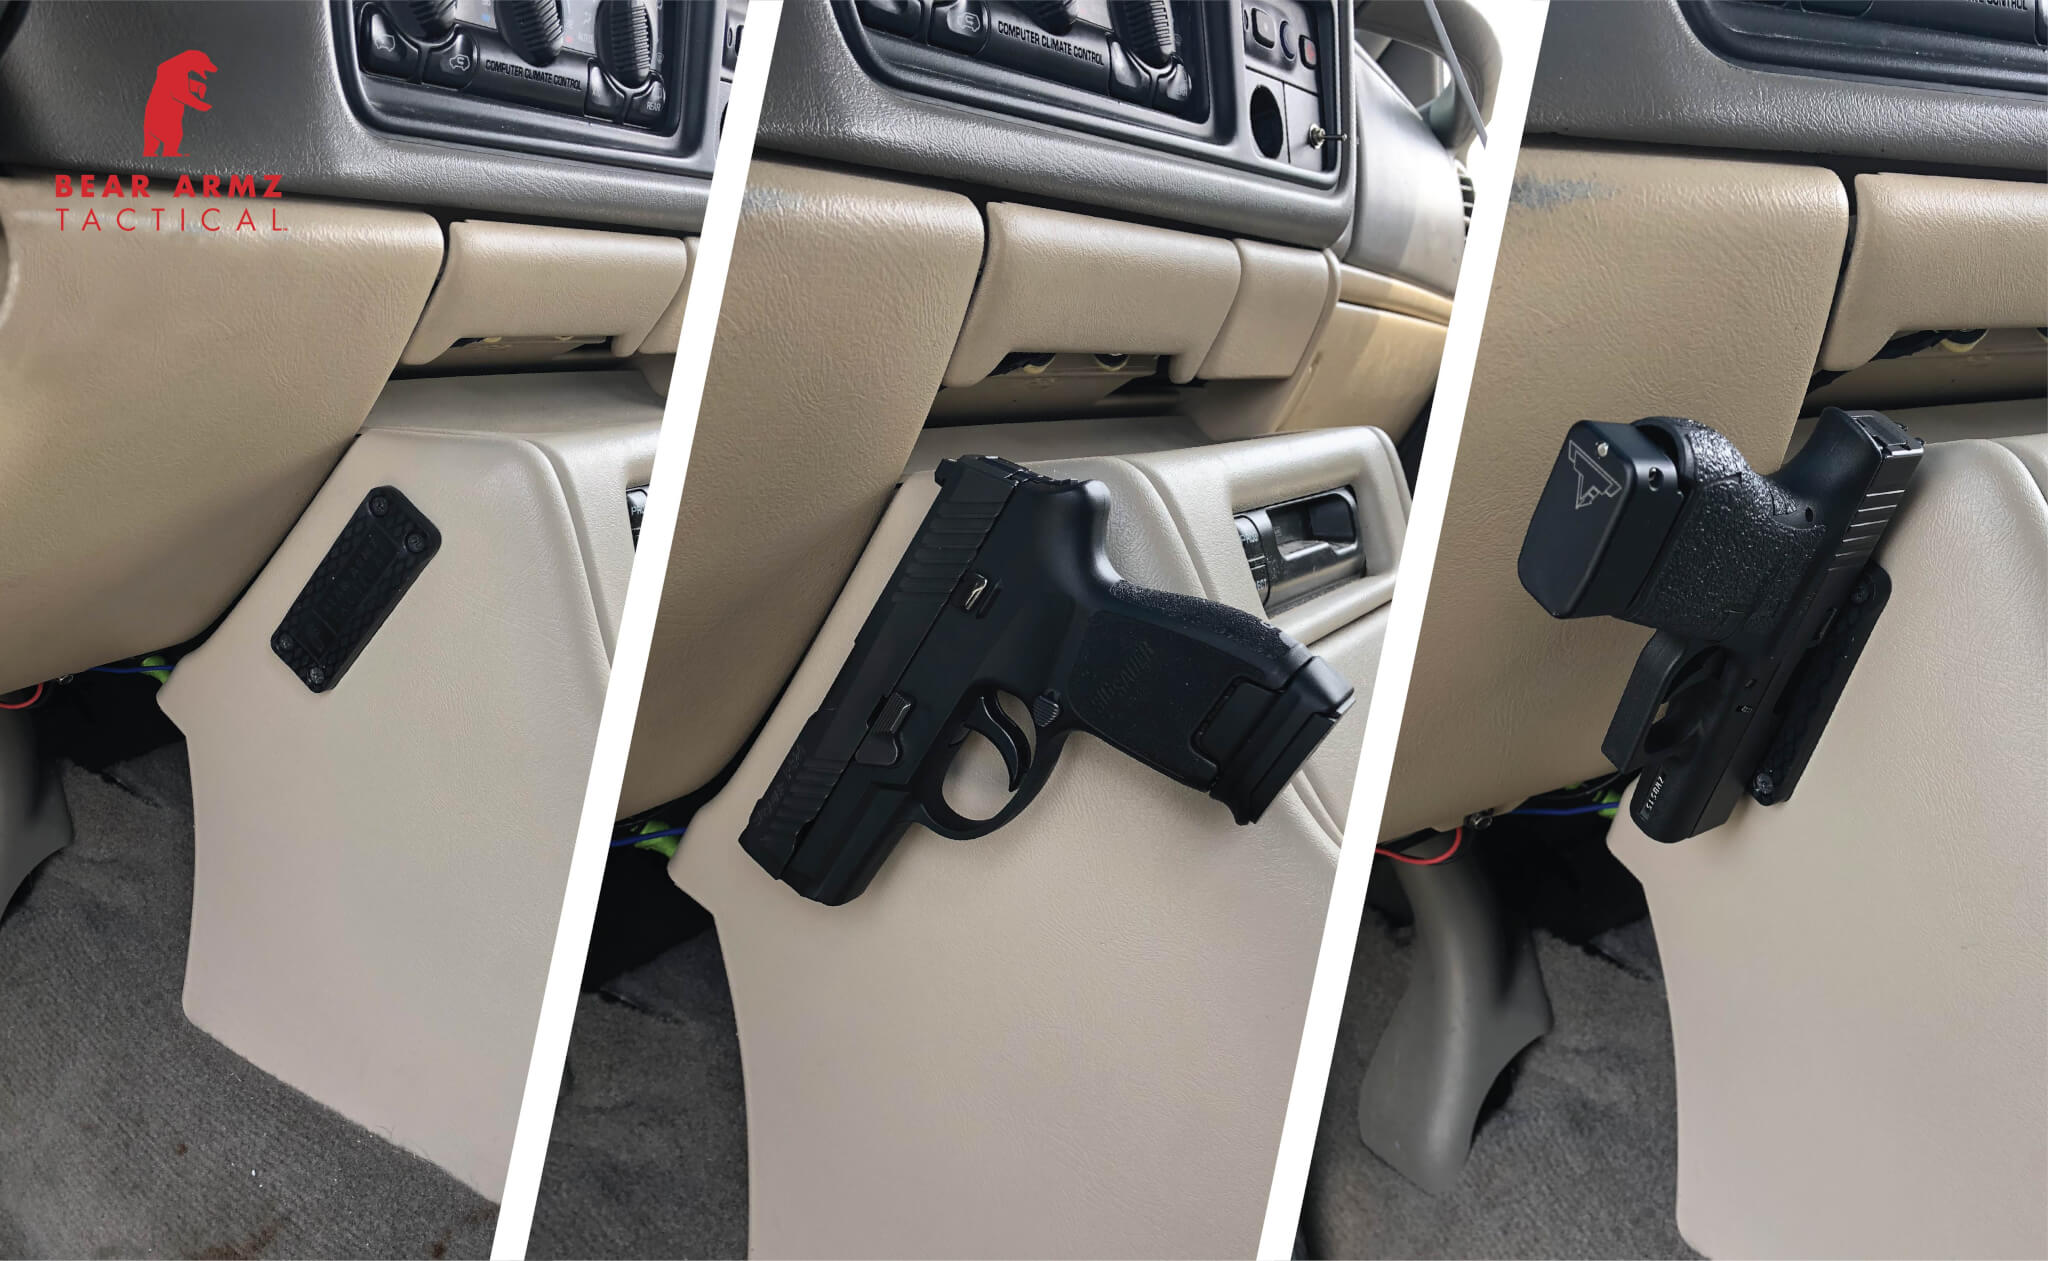 US Gun Magnet Mount & Concealed Holster Rating Firearm Holder For Car Home 